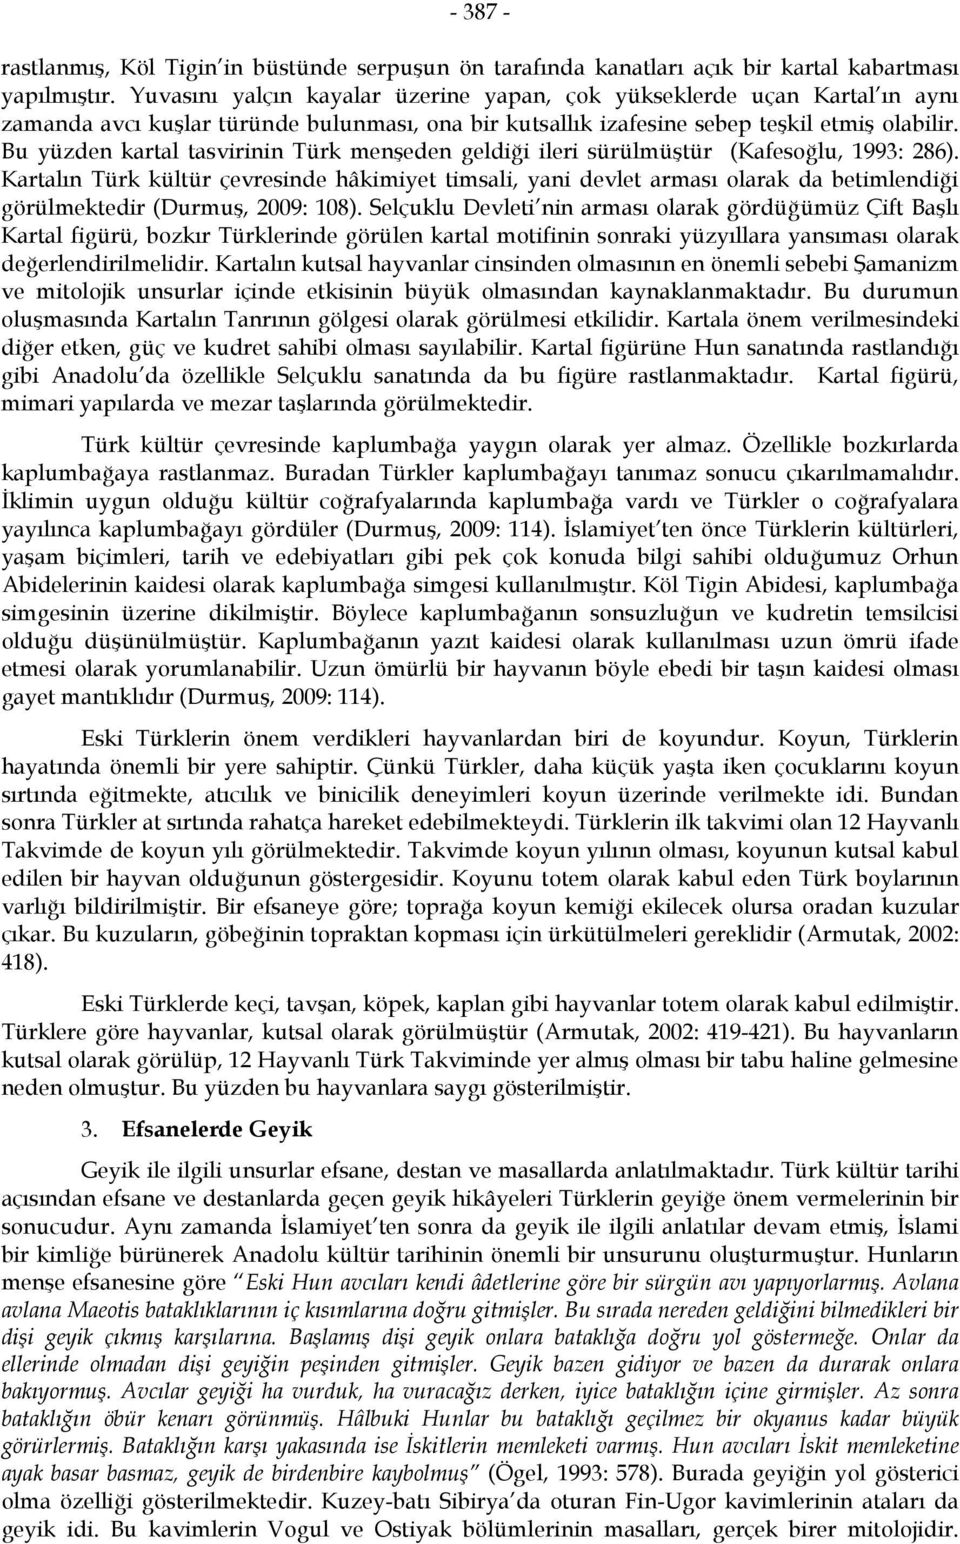 Bu yüzden kartal tasvirinin Türk menşeden geldiği ileri sürülmüştür (Kafesoğlu, 1993: 286).